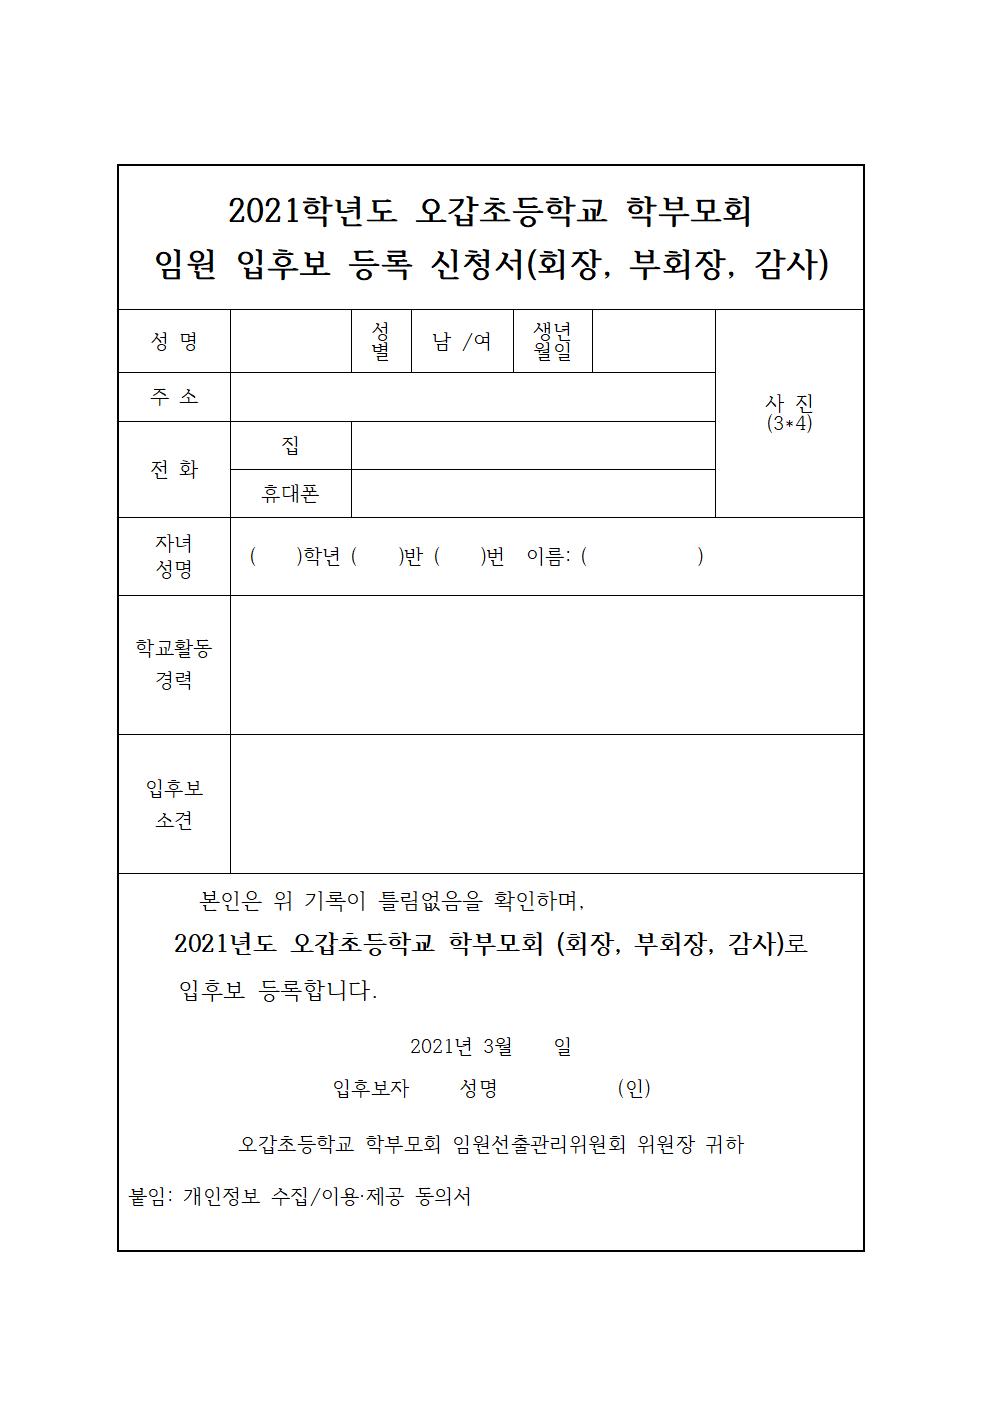 2021. 오갑초등학교 학부모회 임원 선출 공고문002